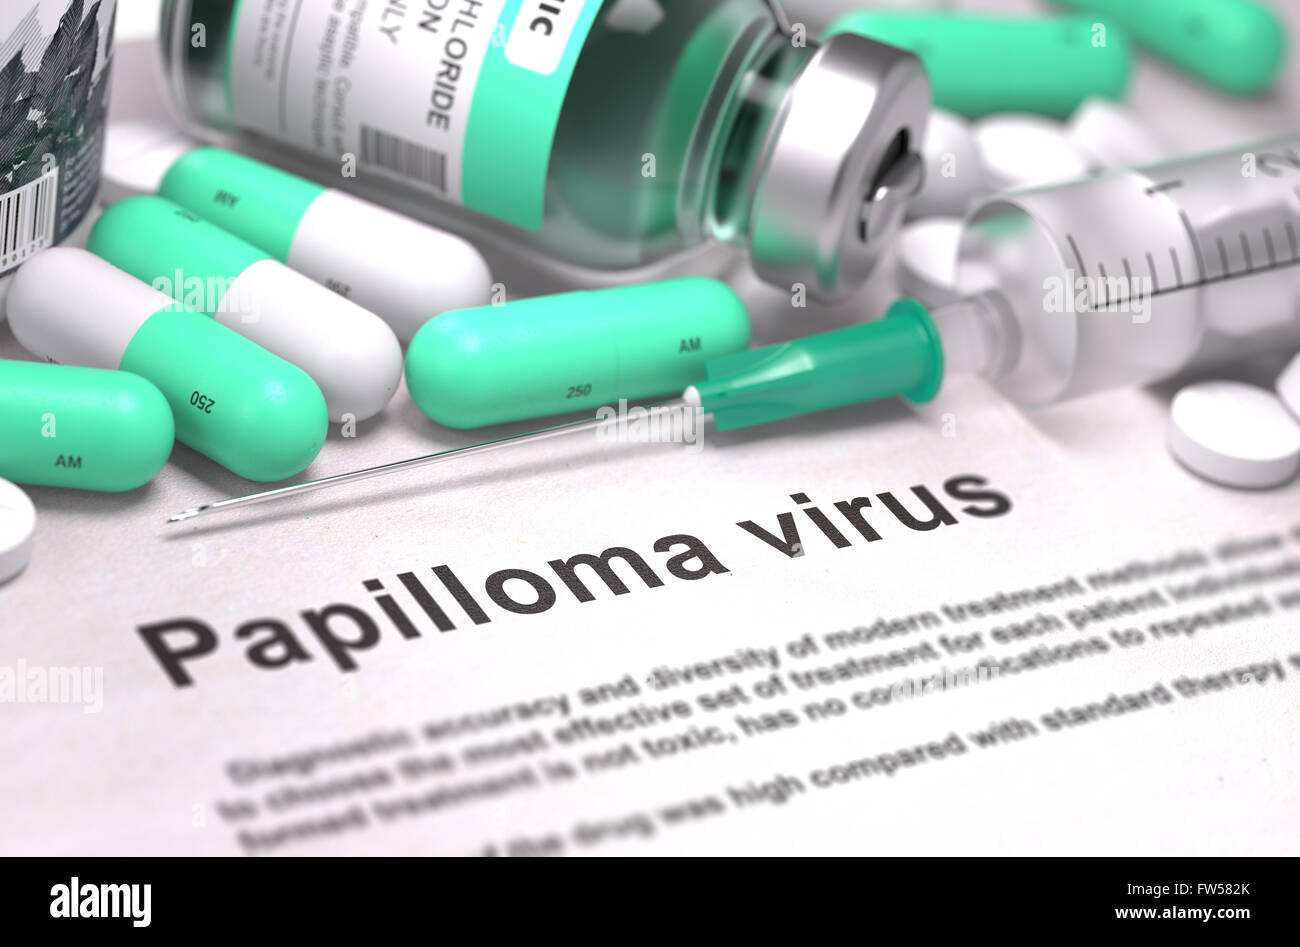 Papilloma Virus diagnosi. Concetto medico. Foto Stock